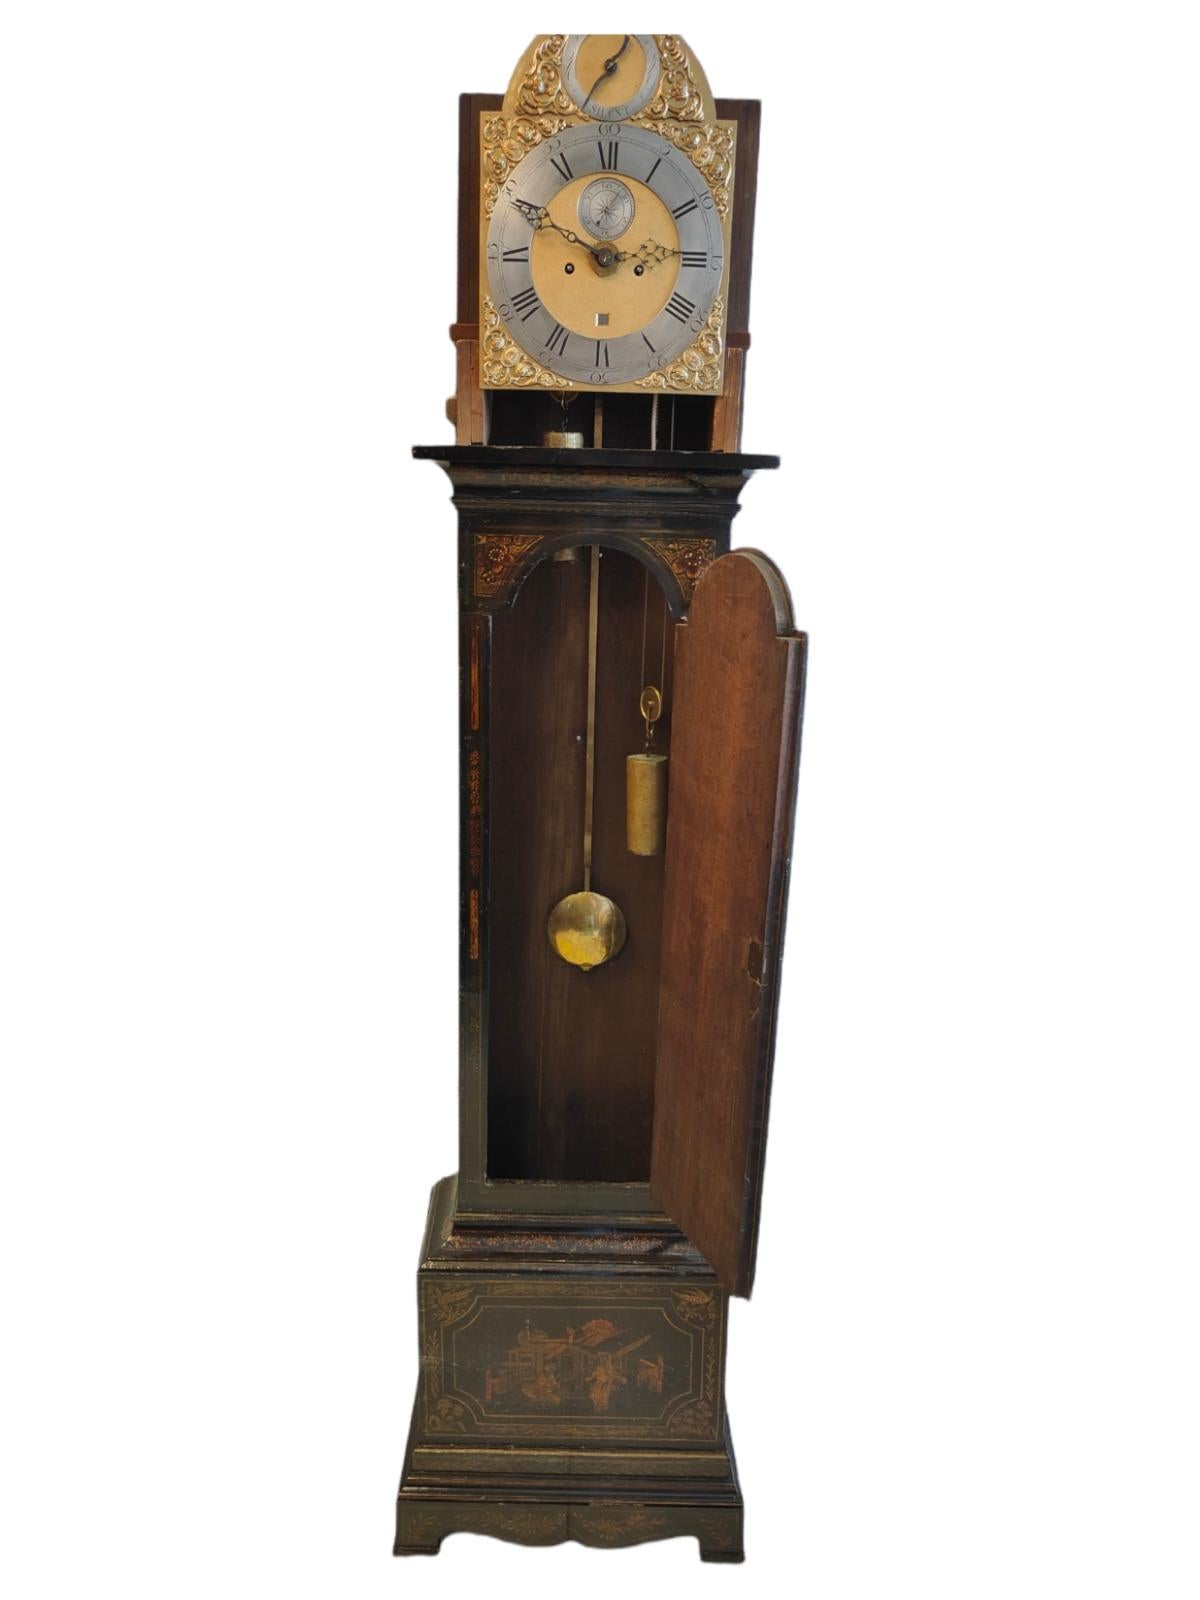 Großvater Gehäuse Uhr mit chinesischen Figuren xixth
Englische Uhr aus dem 19. Jahrhundert, verziert mit asiatischen Landschaften. Die Uhr funktioniert perfekt und ist vollständig. Der Kasten ist aus Eichenholz gefertigt. Maße 240 x 50 x 30